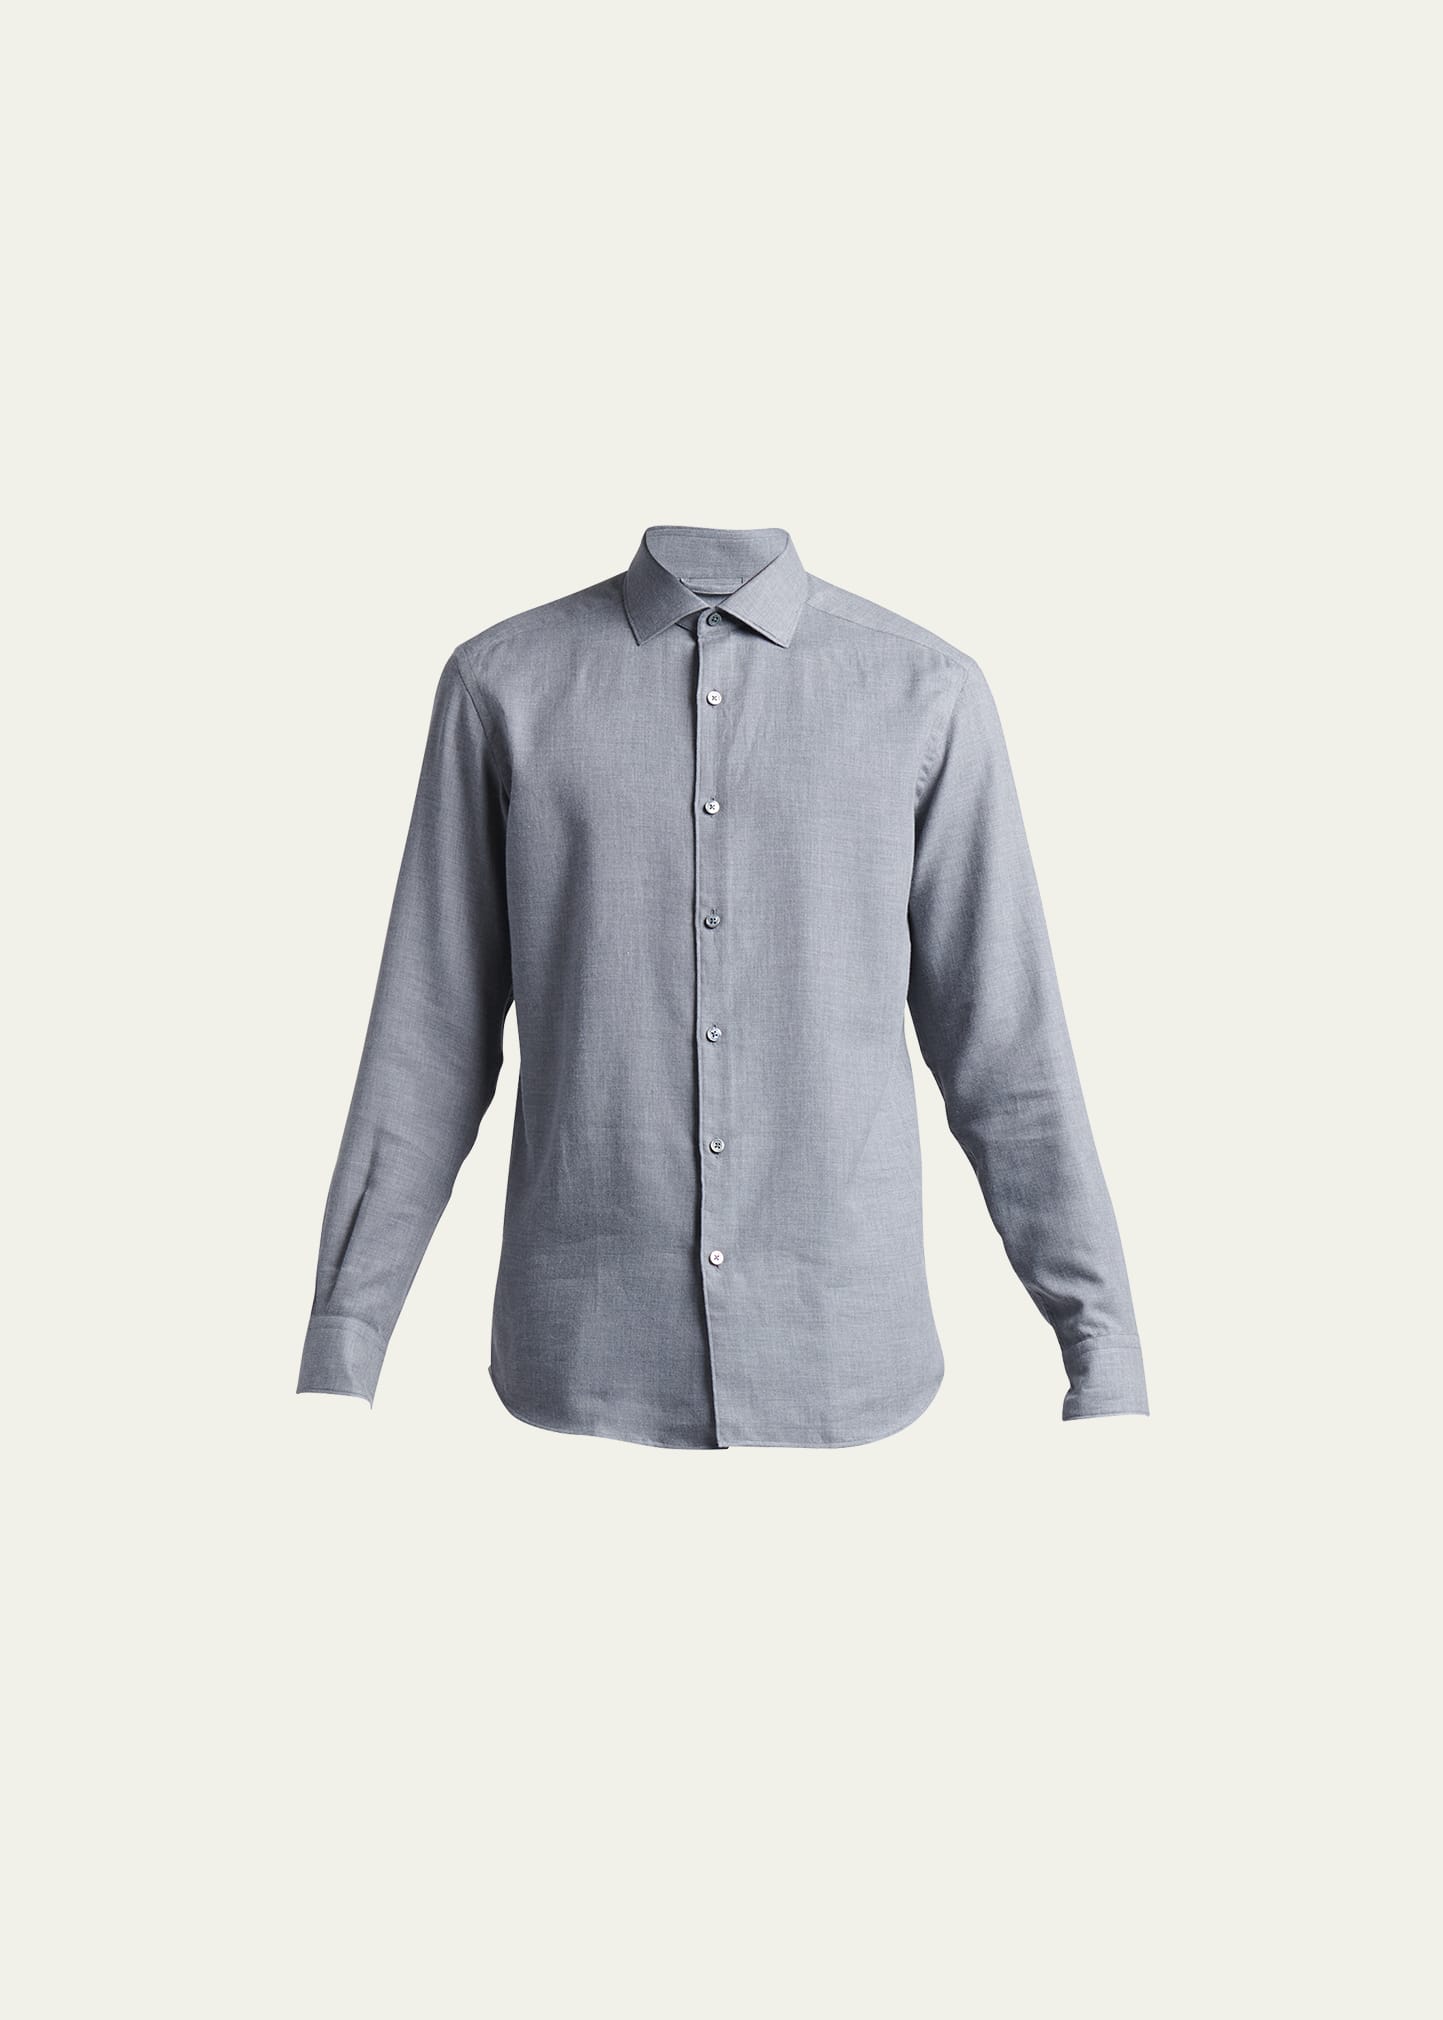 ZEGNA Men's Cashmere-Cotton Dress Shirt